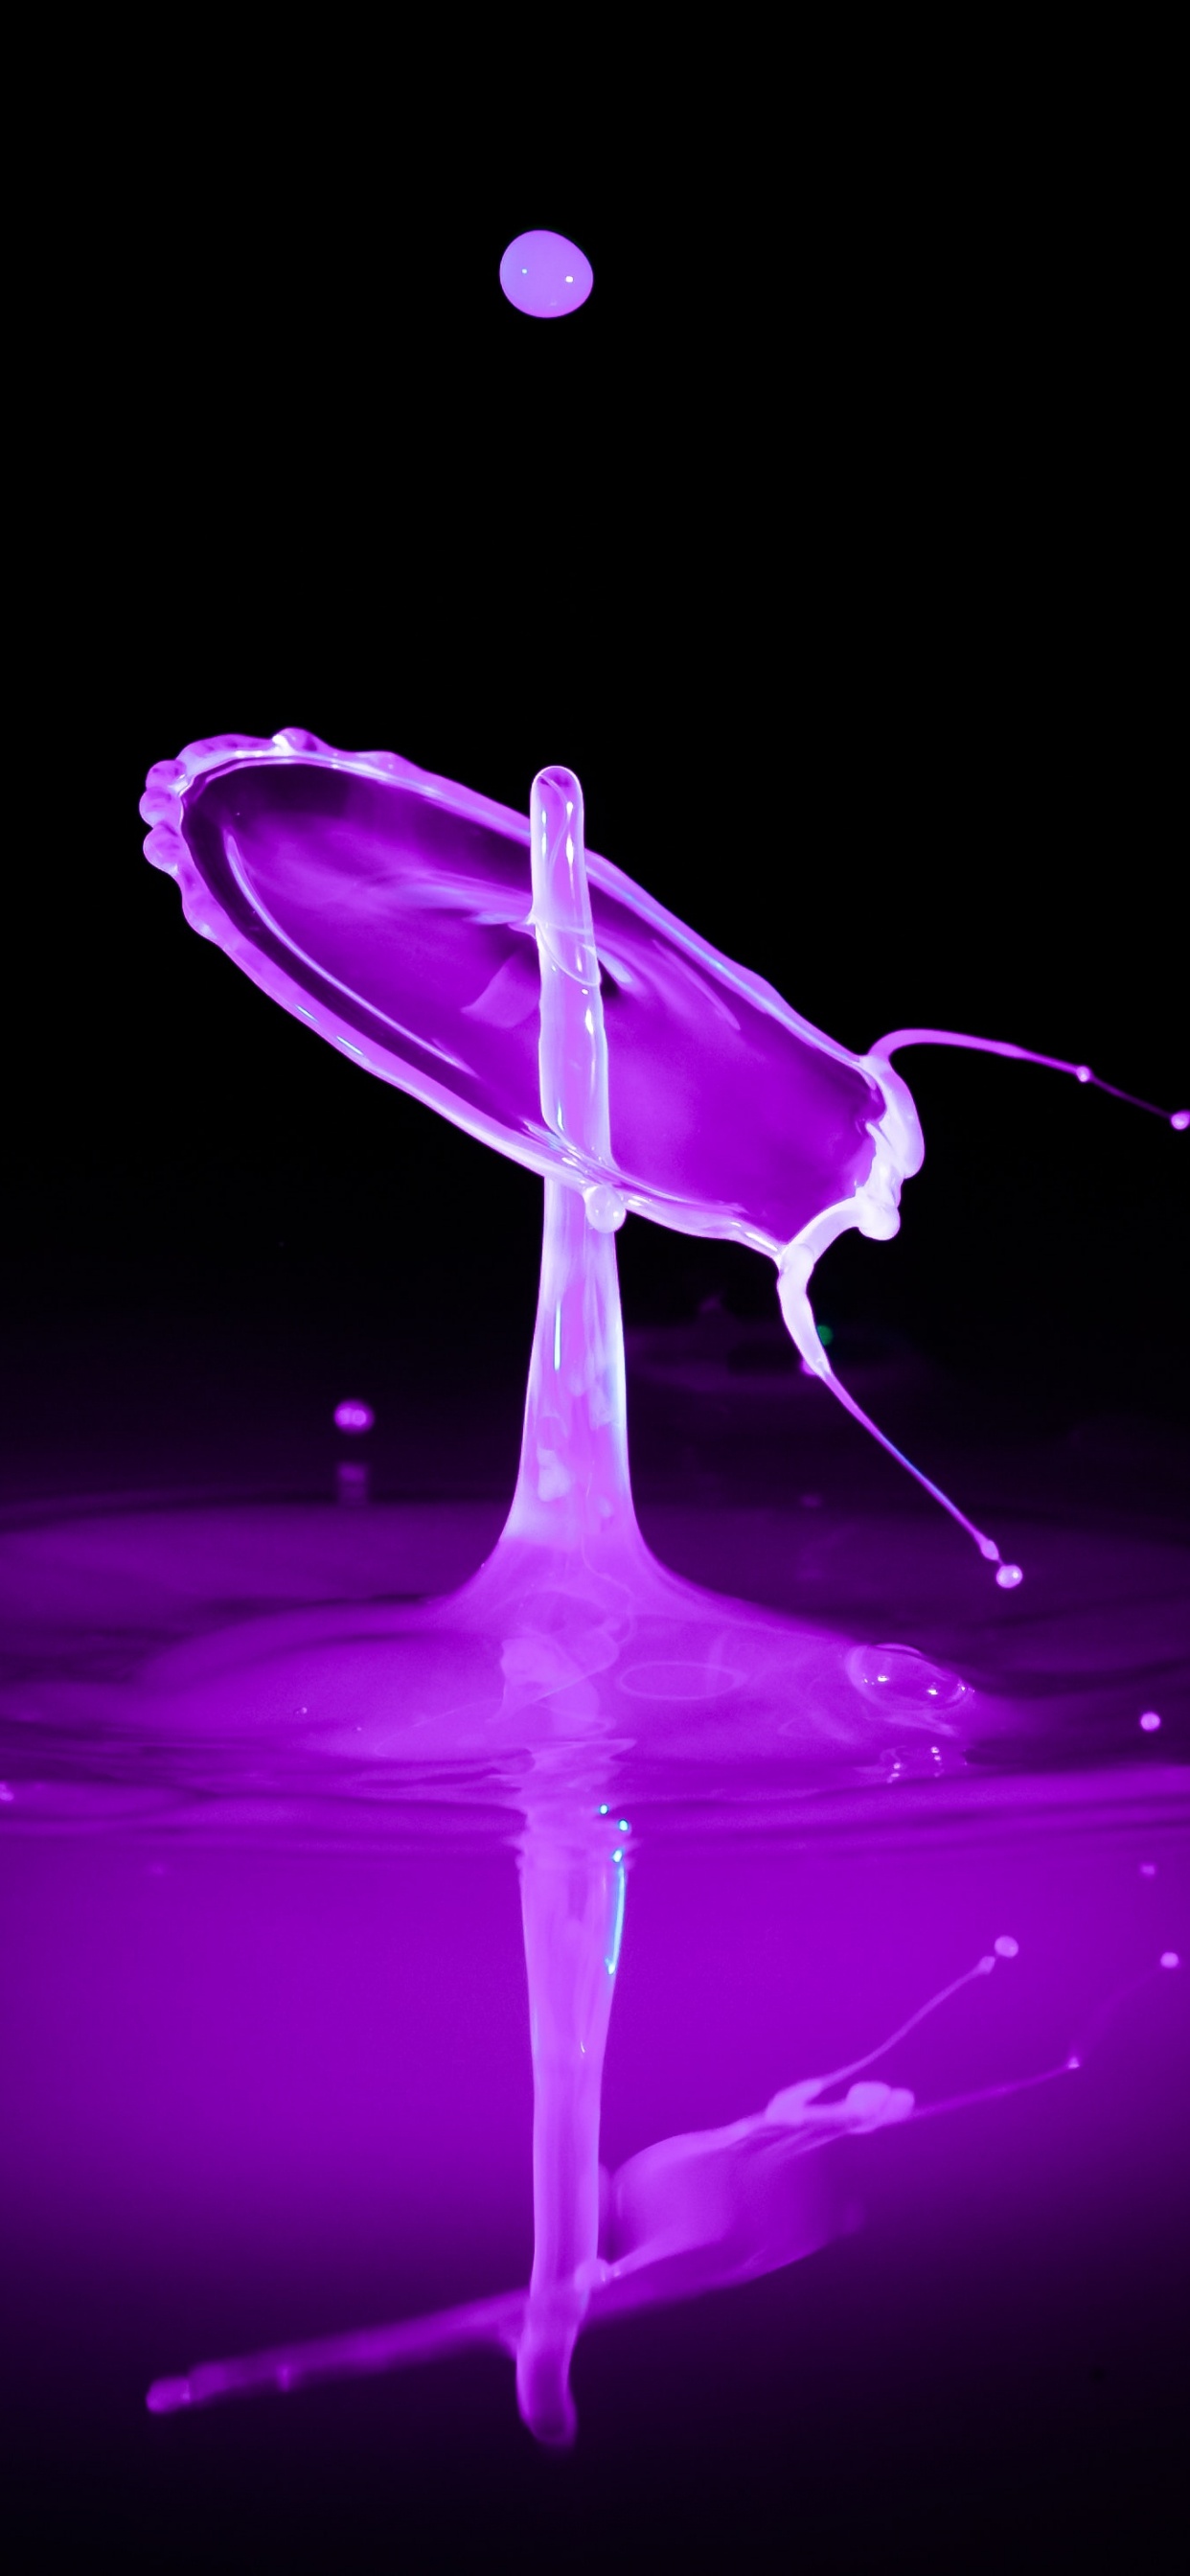 运动的图形, 紫色的, 紫罗兰色, 液体, 流体 壁纸 1242x2688 允许